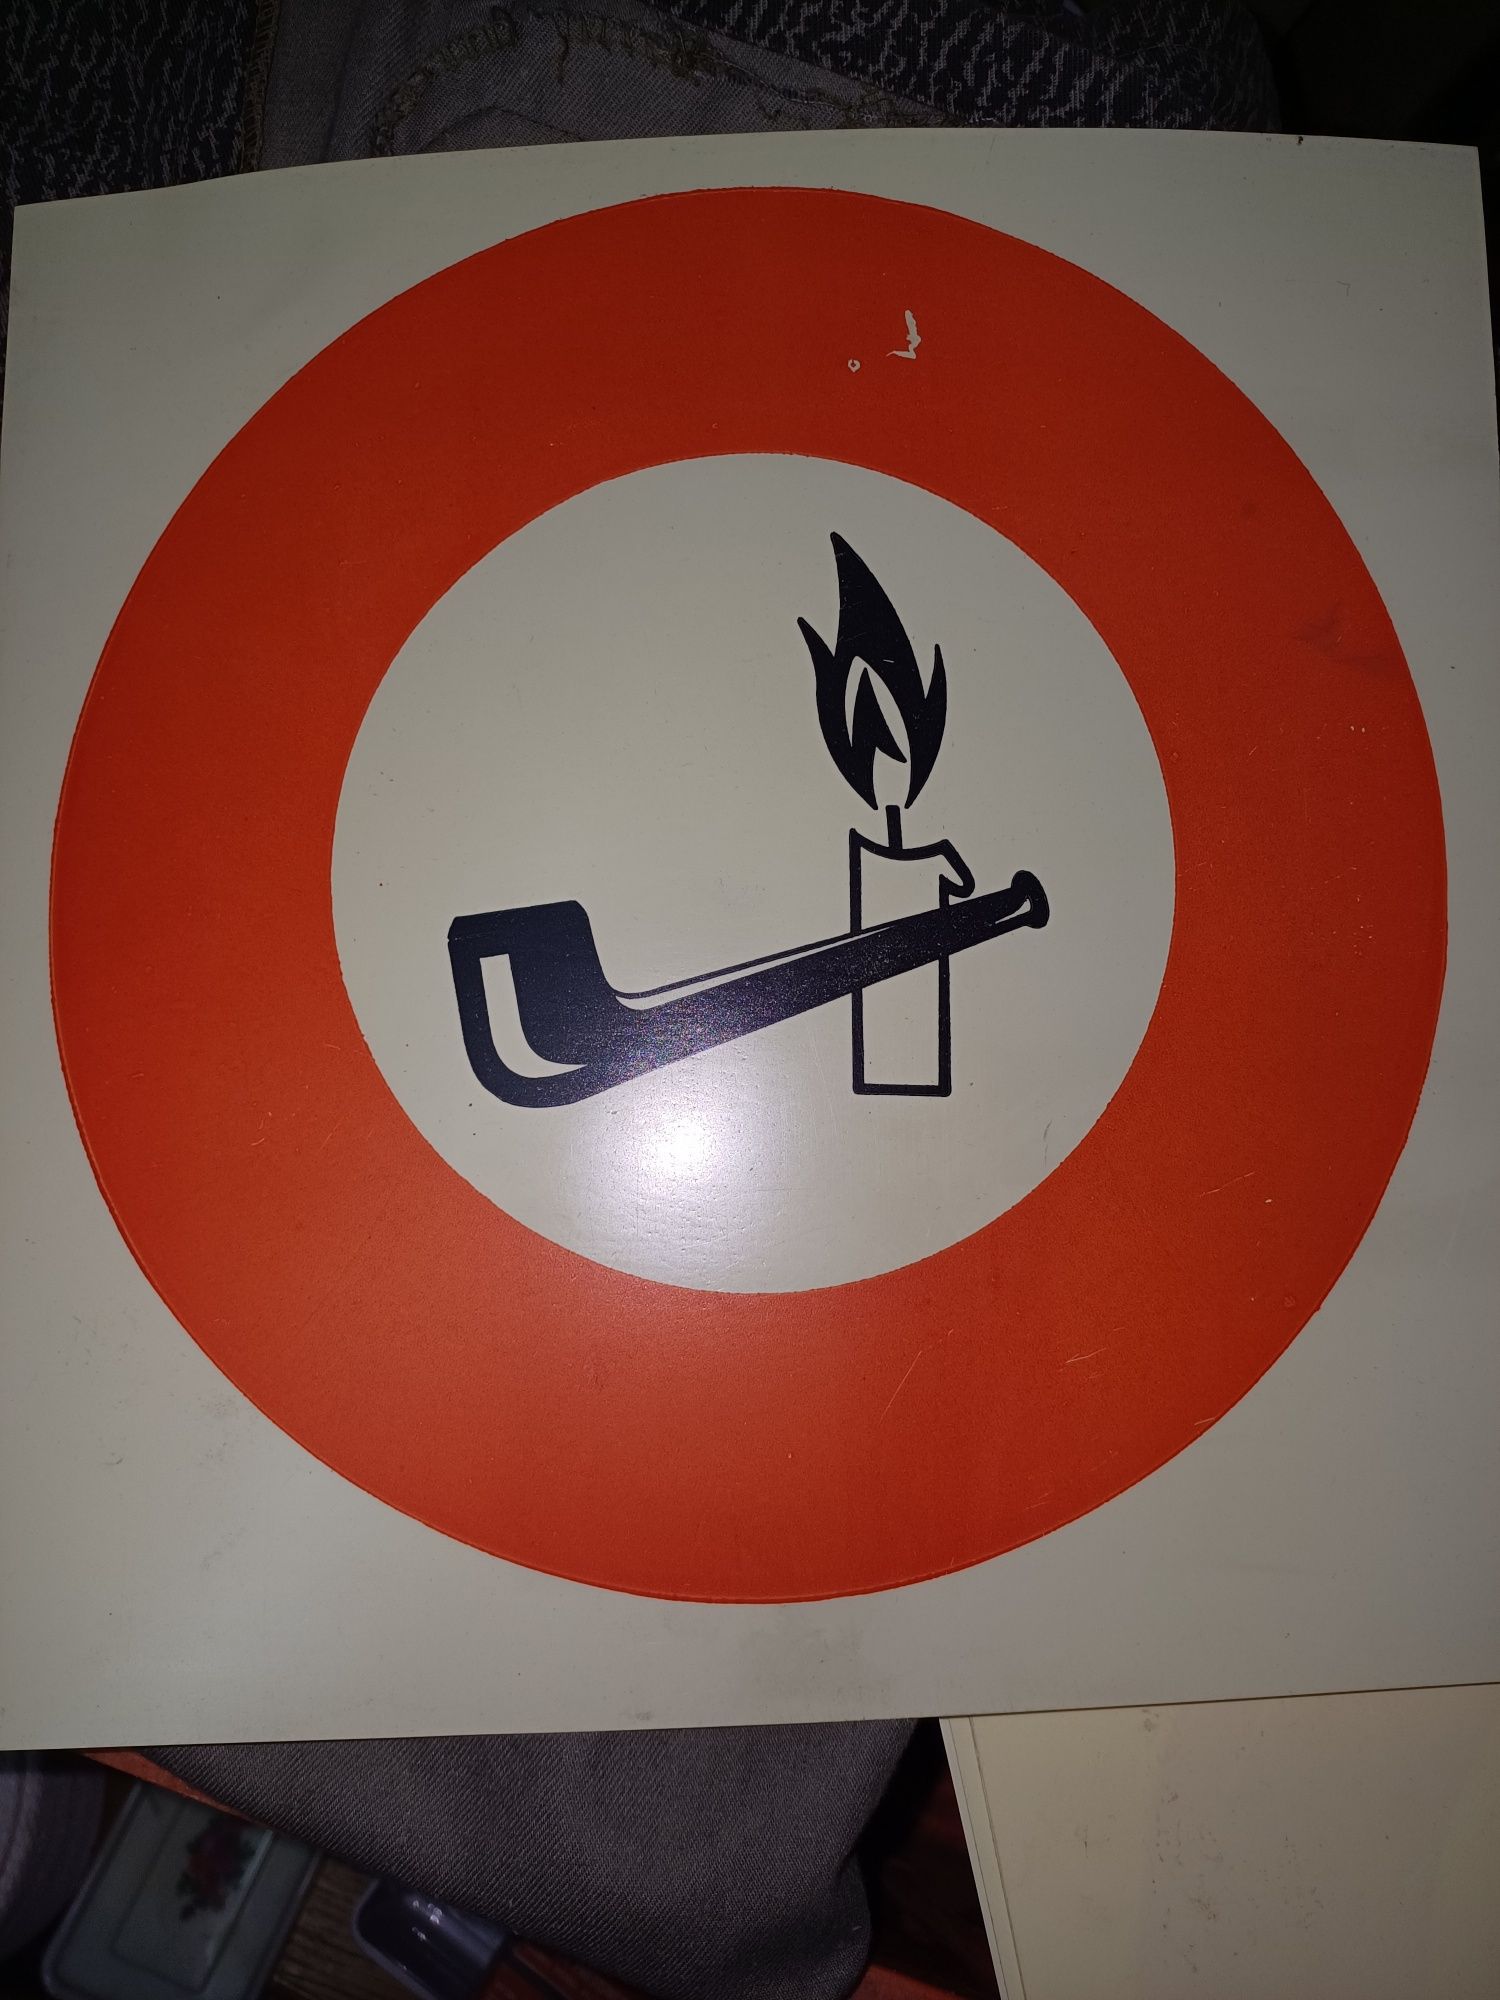 Tablica BHP "zakaz palenia tytoniu i otwartego ognia", PRL